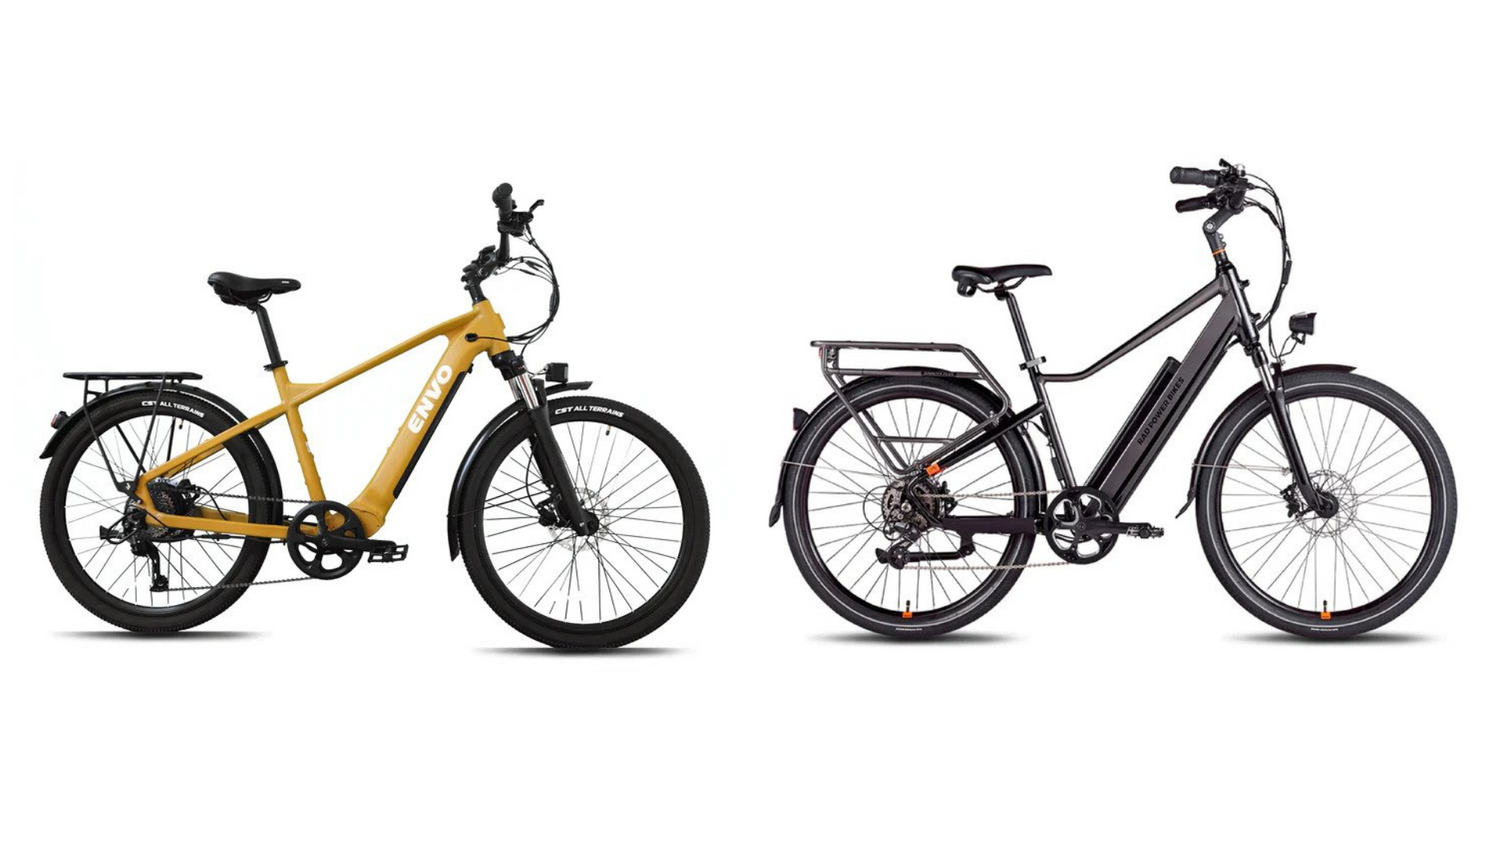 Electric Bike ENVO D50 vs Rad City 5+: Comparison Review blog